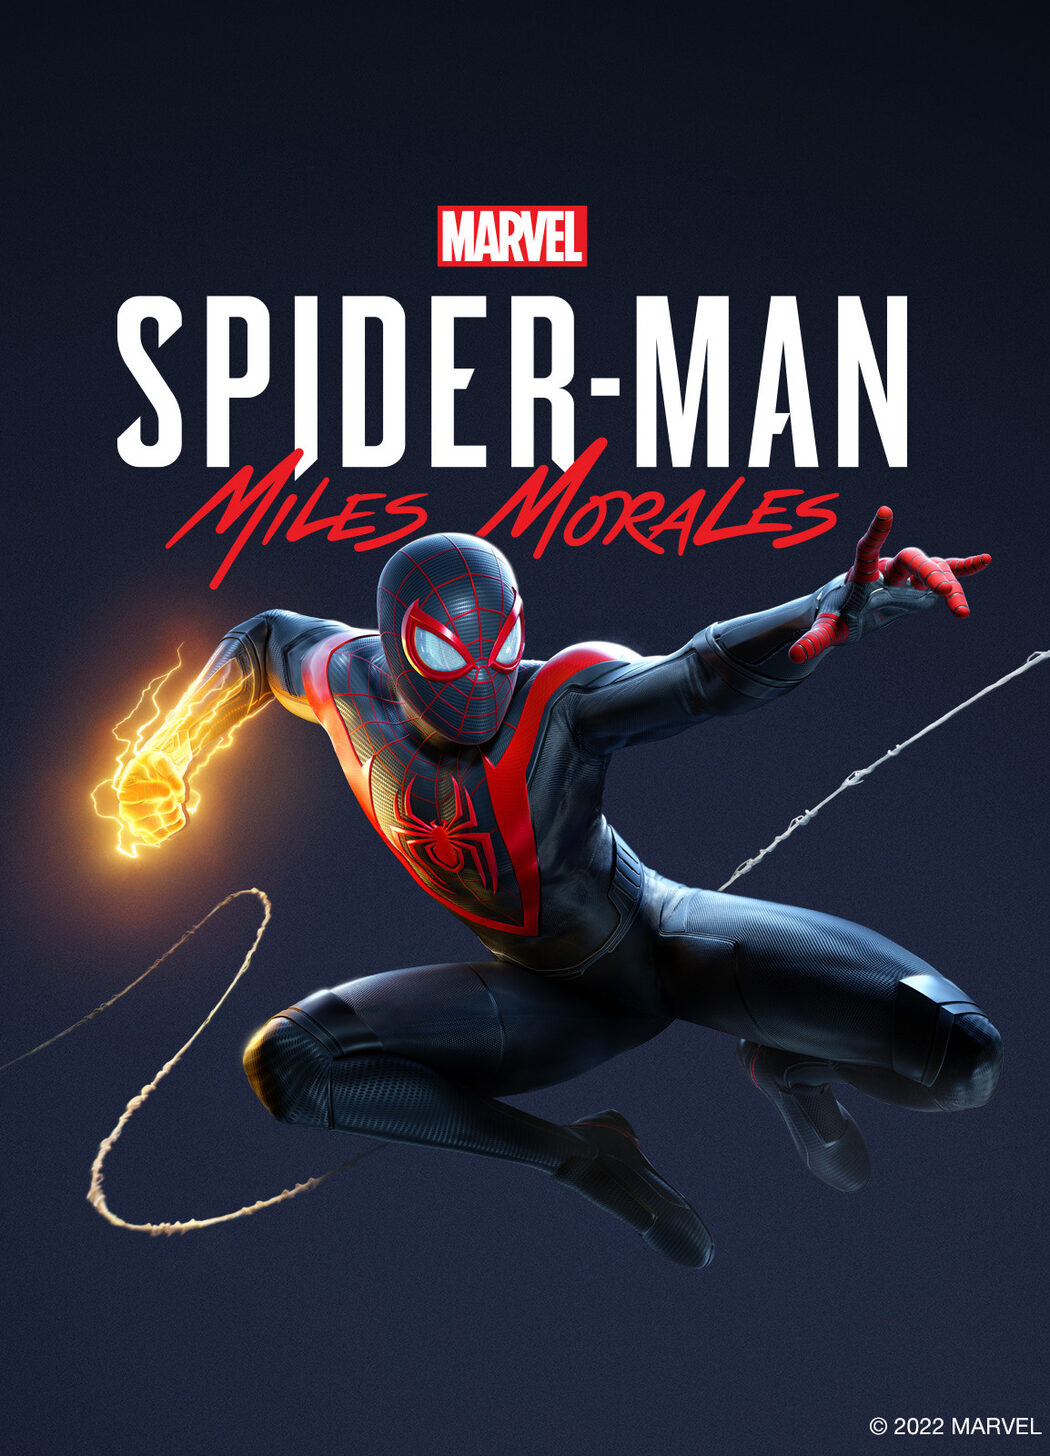 Spider-Man no PC: veja história, gameplay e requisitos mínimos